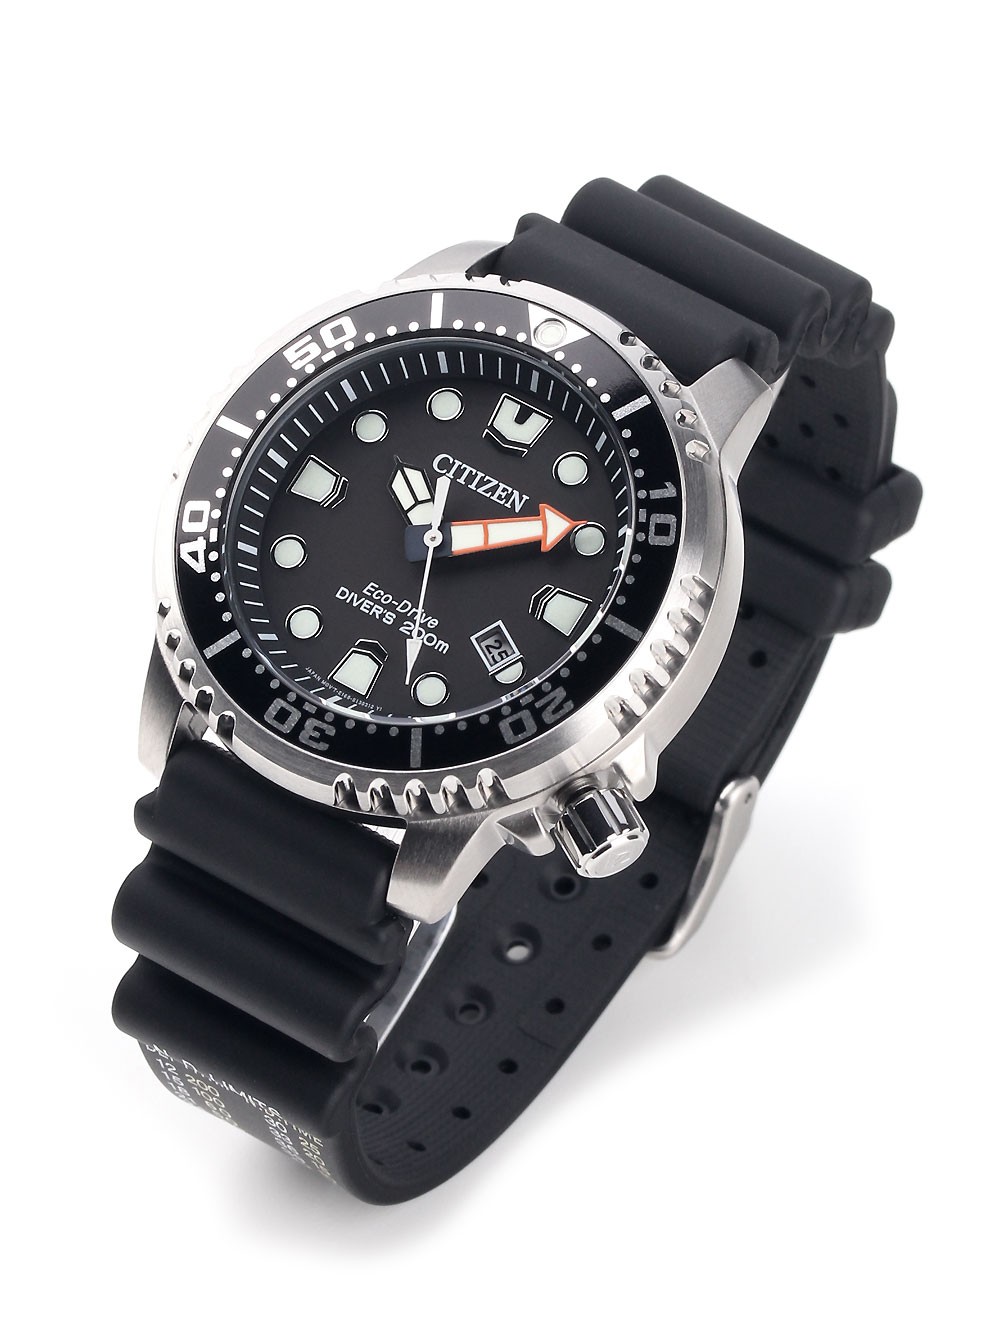 Watches | Chrono12 - Citizen Eco-Drive BN0150-10E Herren Taucheruhr ...